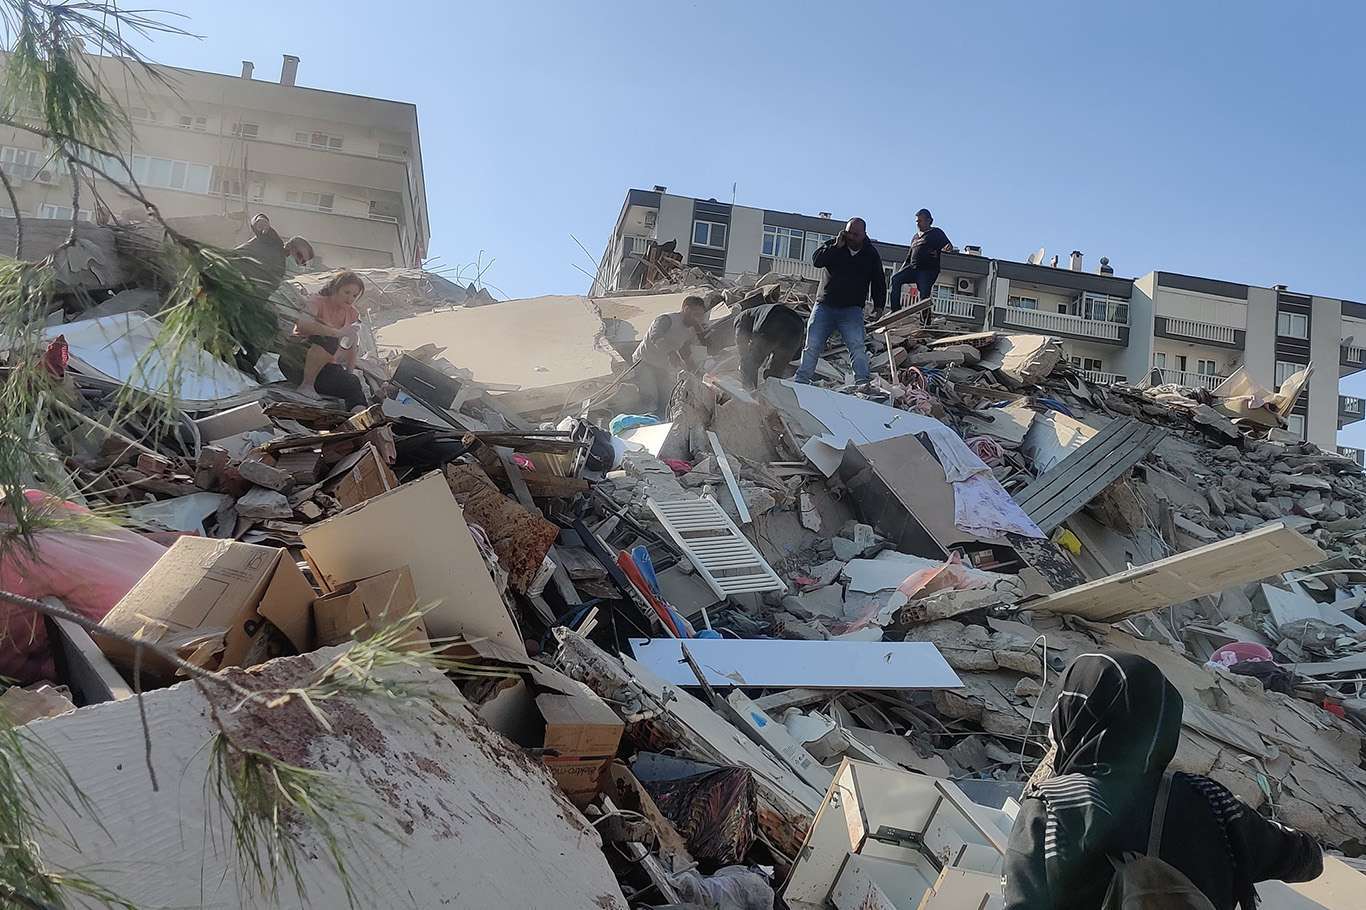 انعكاس لحظة انهيار المبنى على الكاميرات بعد زلزال ضرب ولاية إزمير